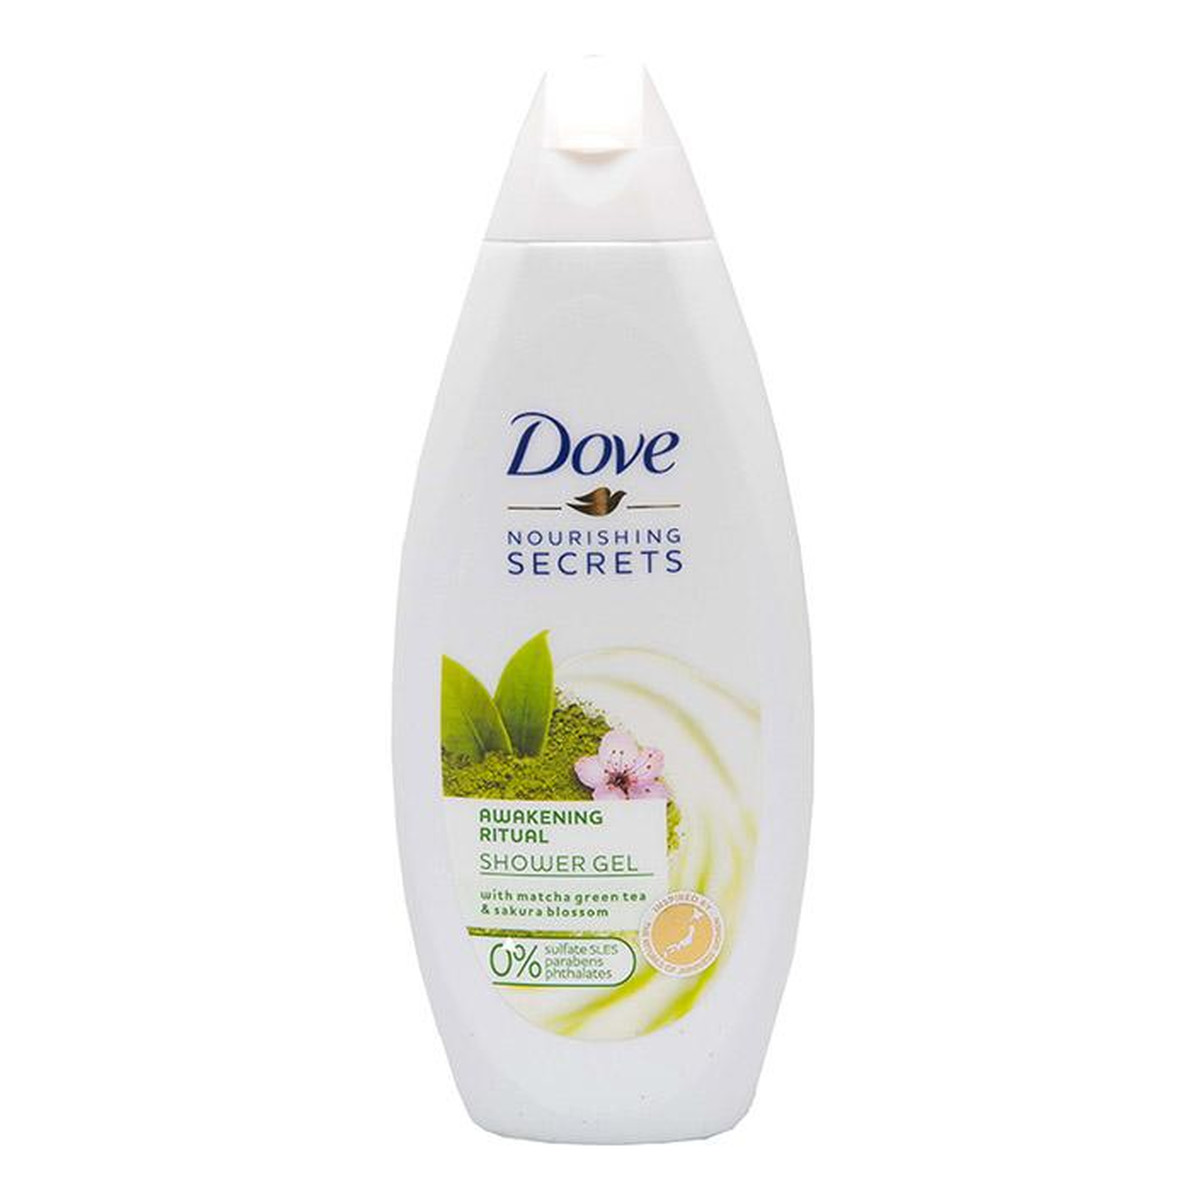 Dove Nourishing Secrets Awakening Ritual odświeżający żel pod prysznic Matcha Green Tea & Sakura Blossom 250ml